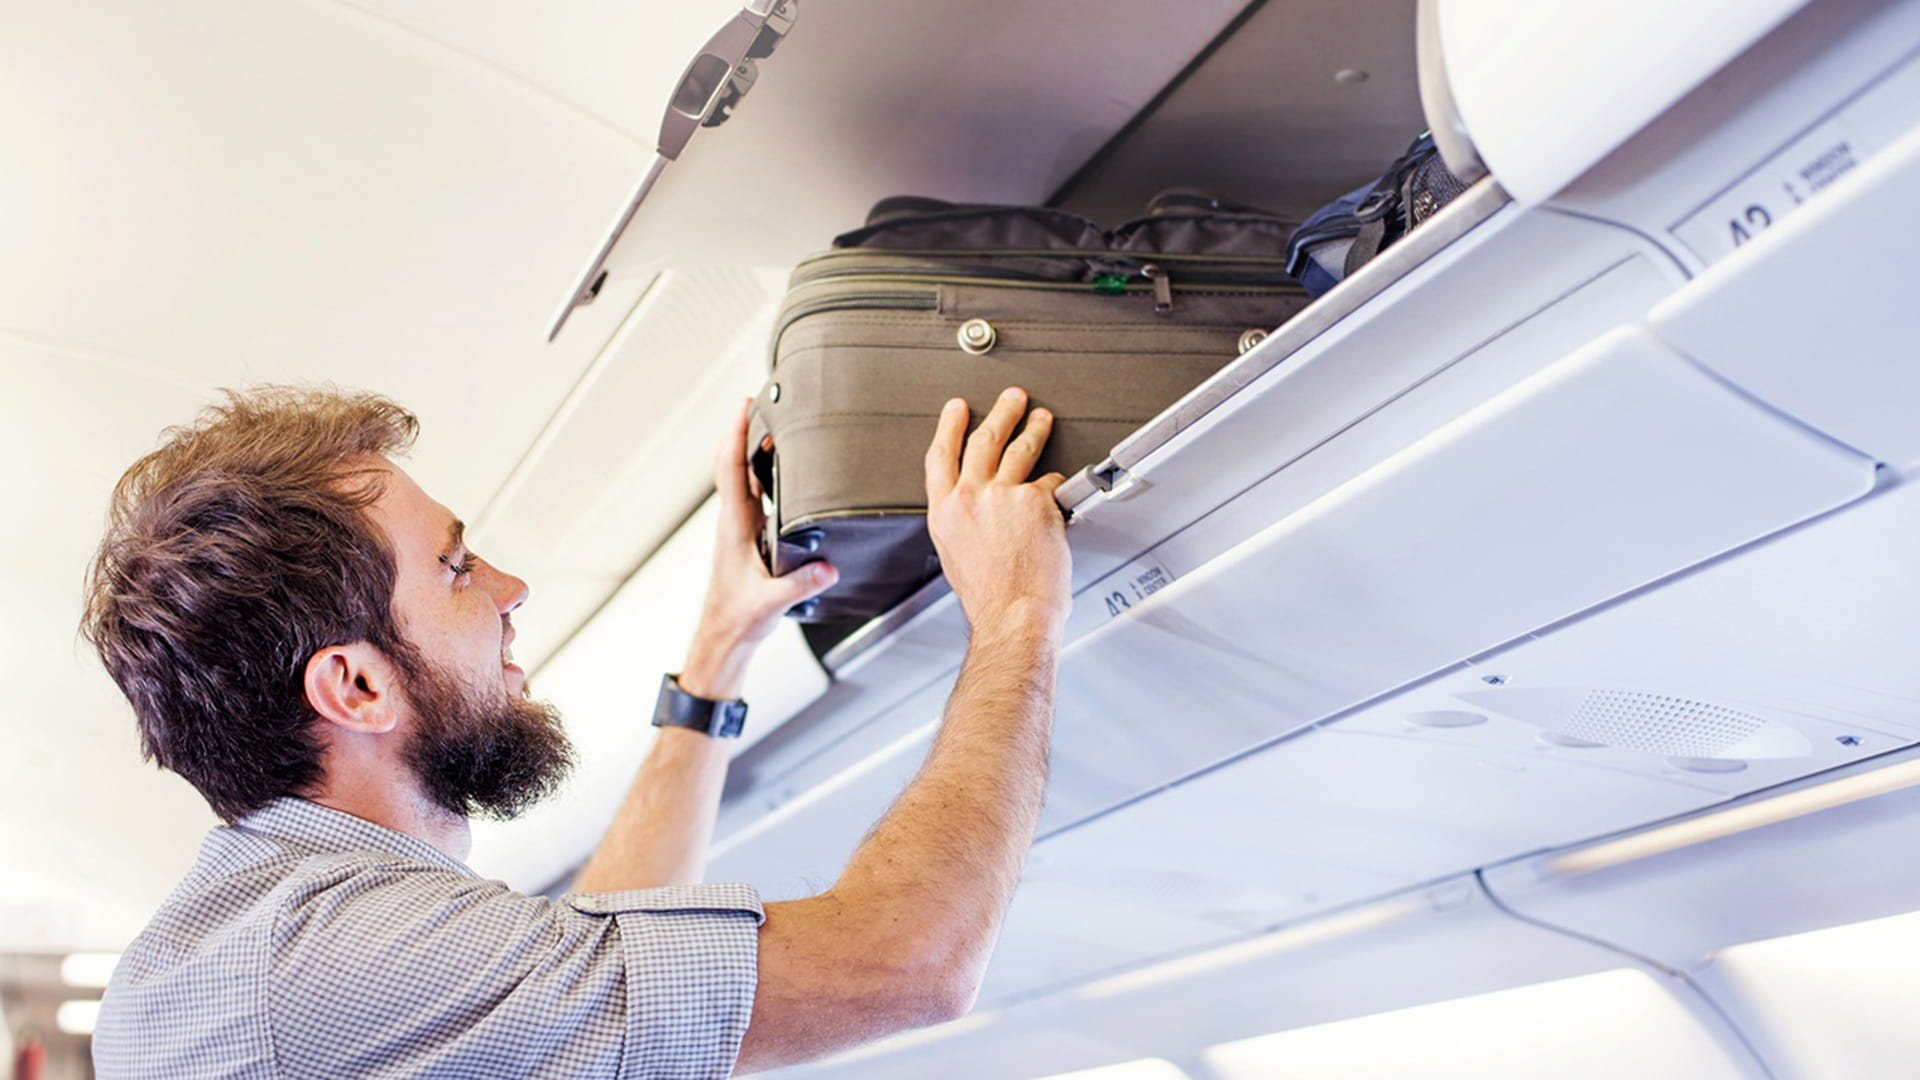 Man putting luggage in overhead bin on airplane